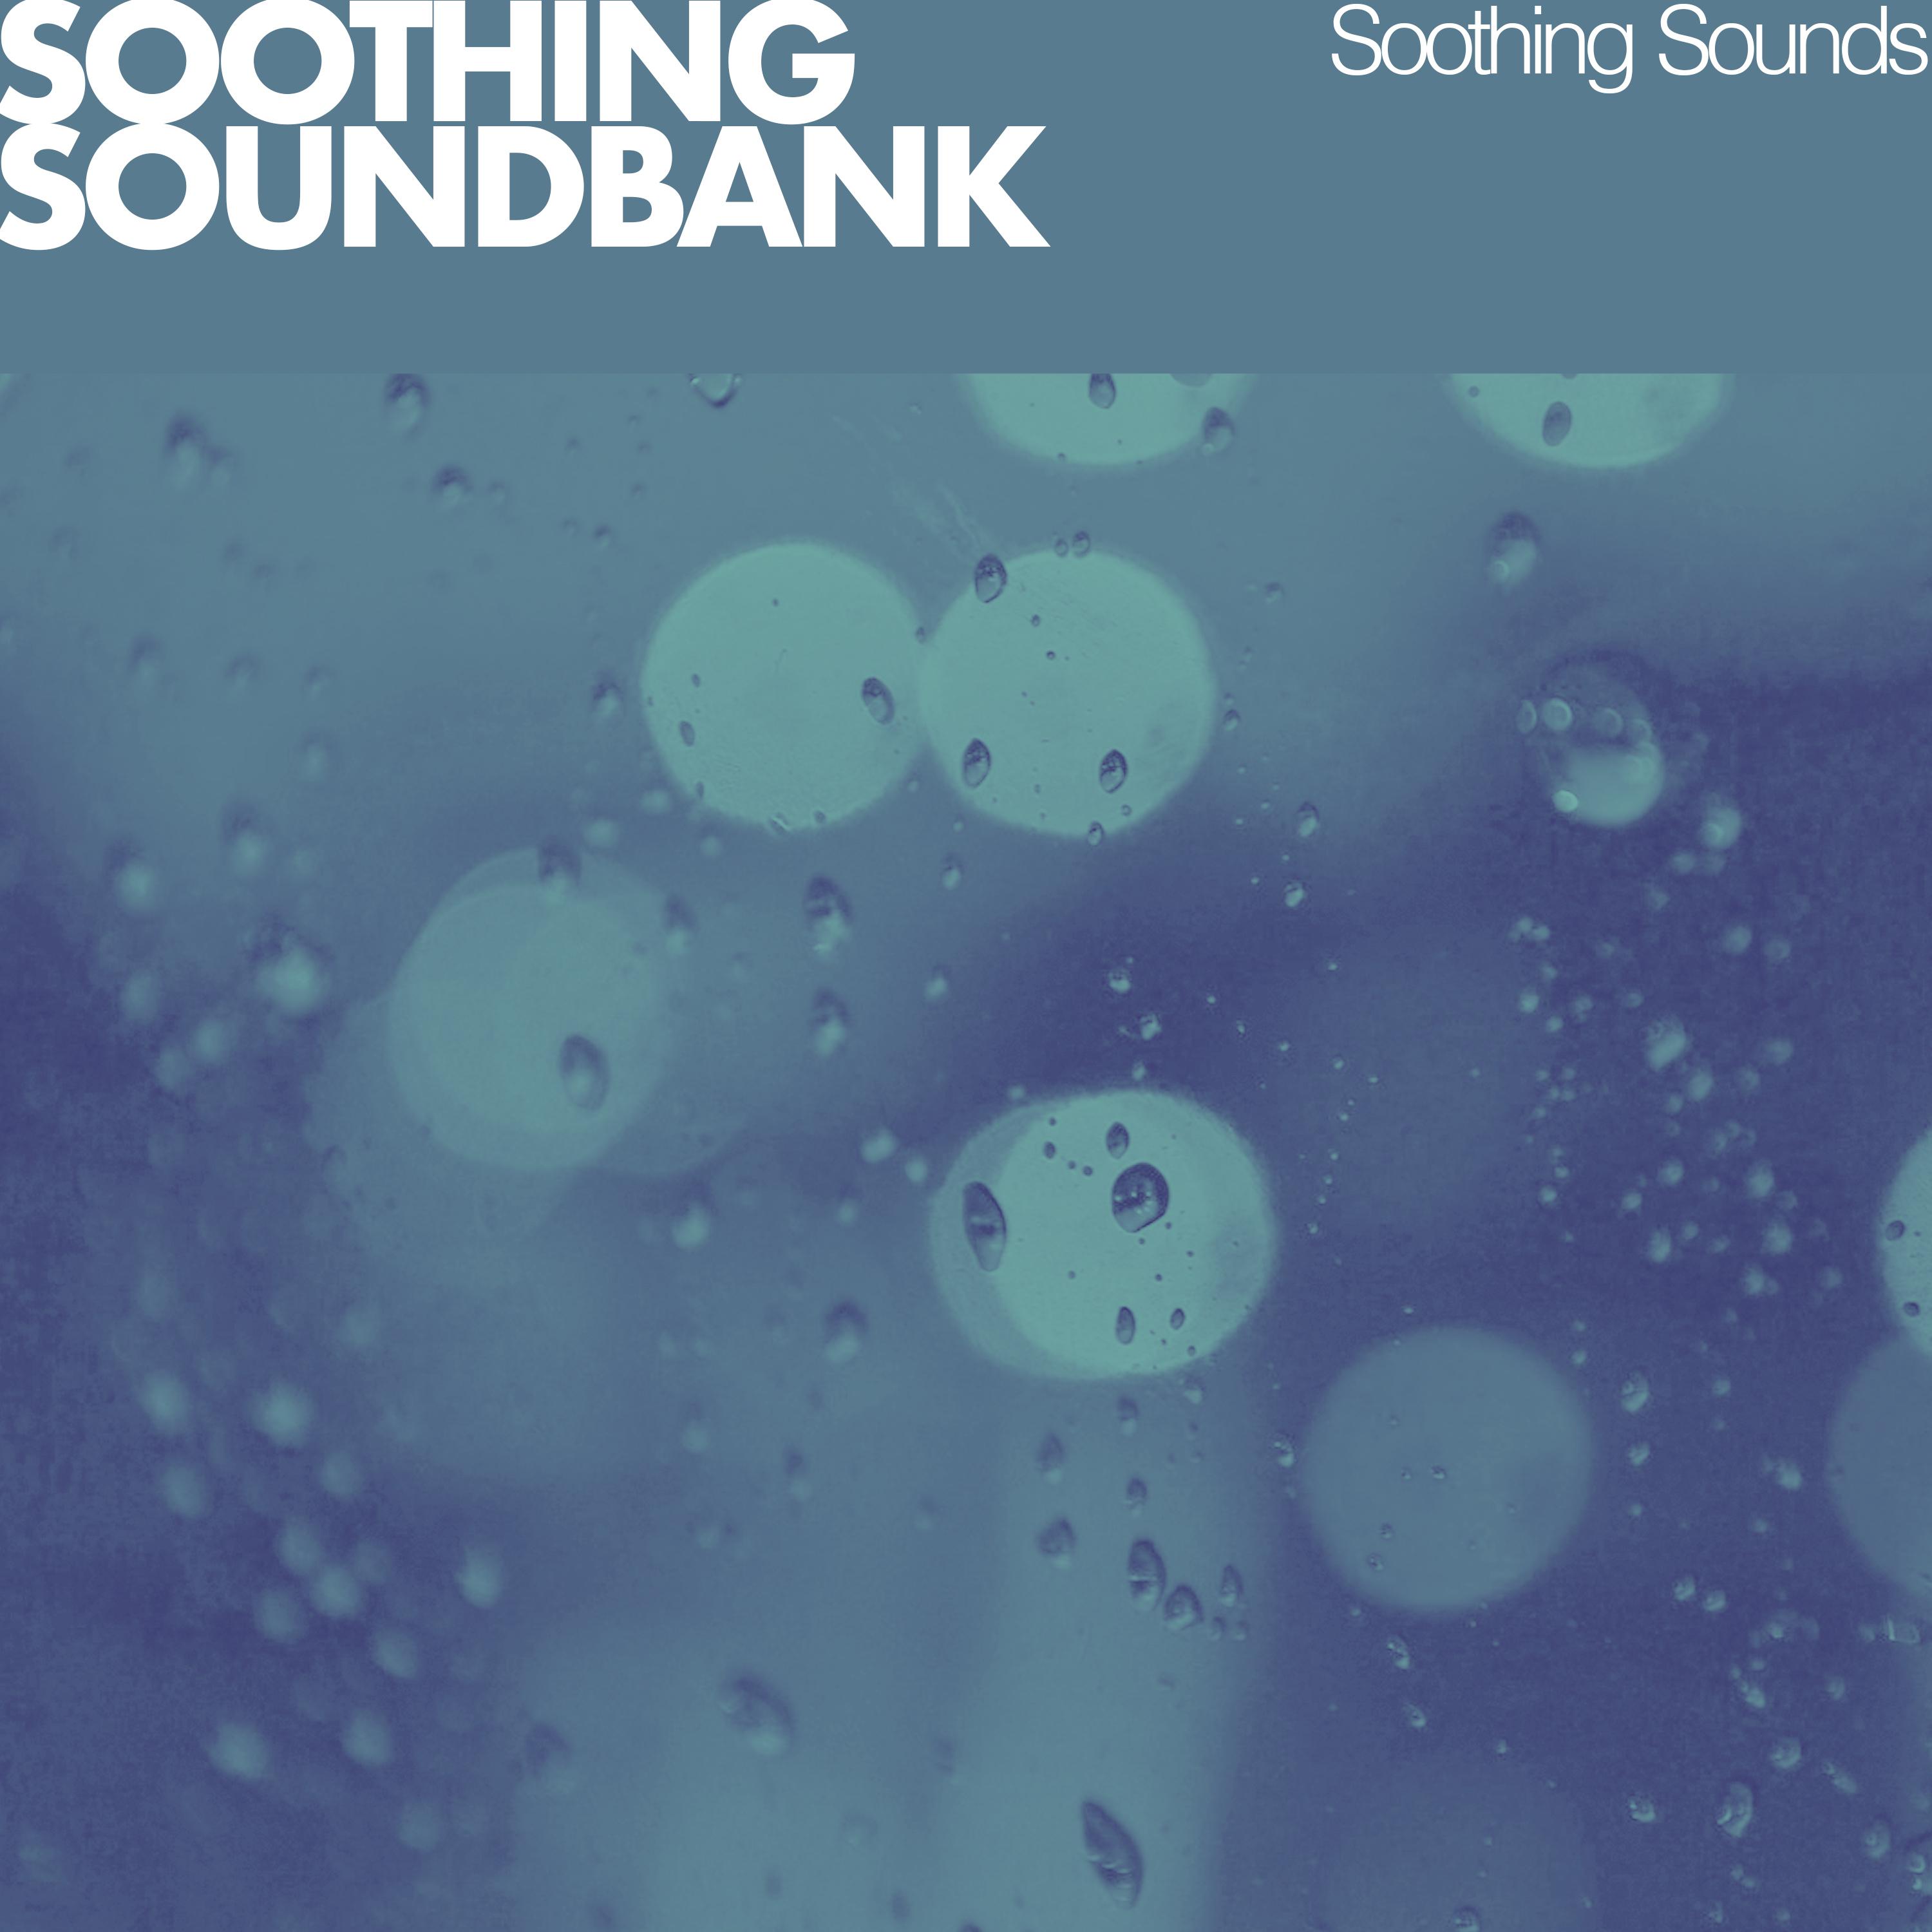 Soothing Soundbank